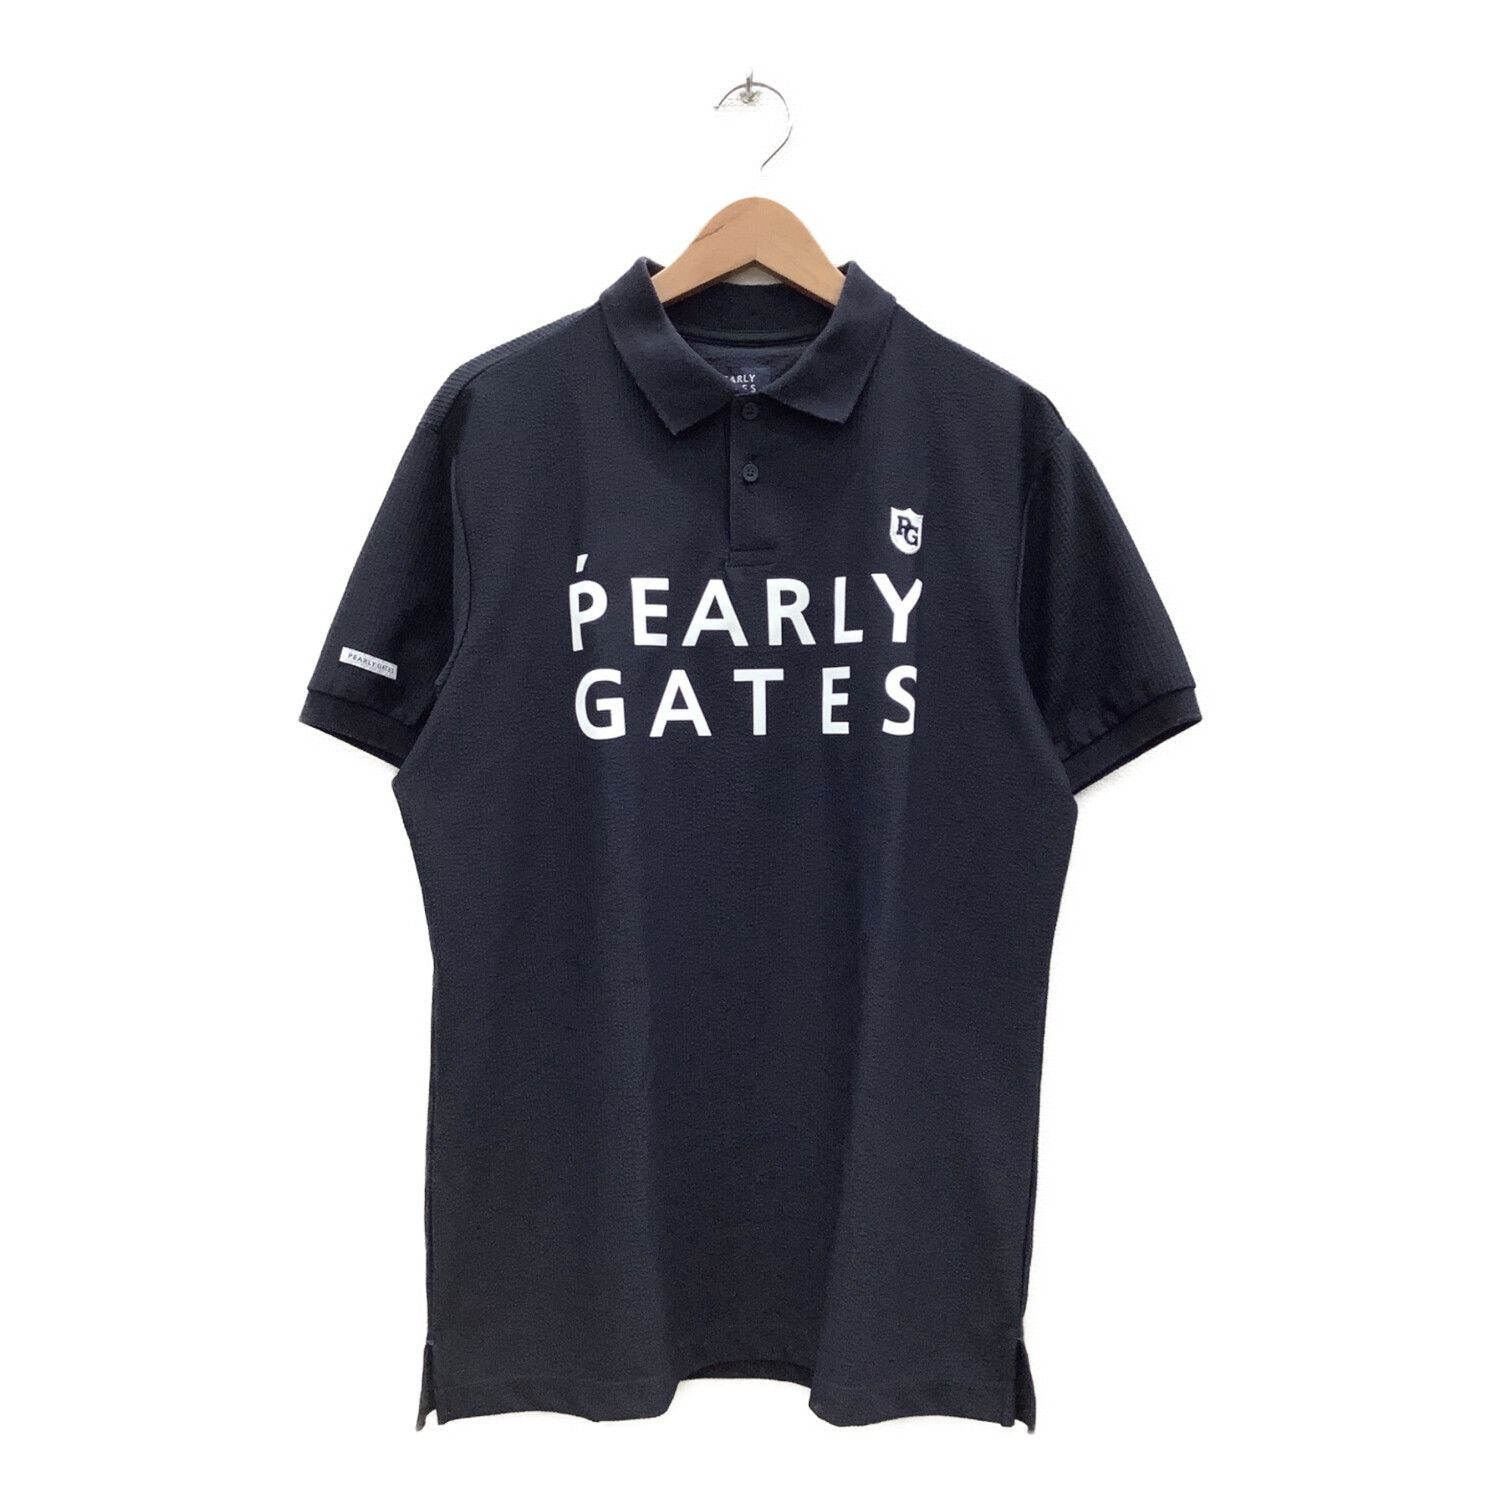 PEARLY GATES (パーリーゲイツ) ゴルフウェア(トップス) メンズ SIZE 